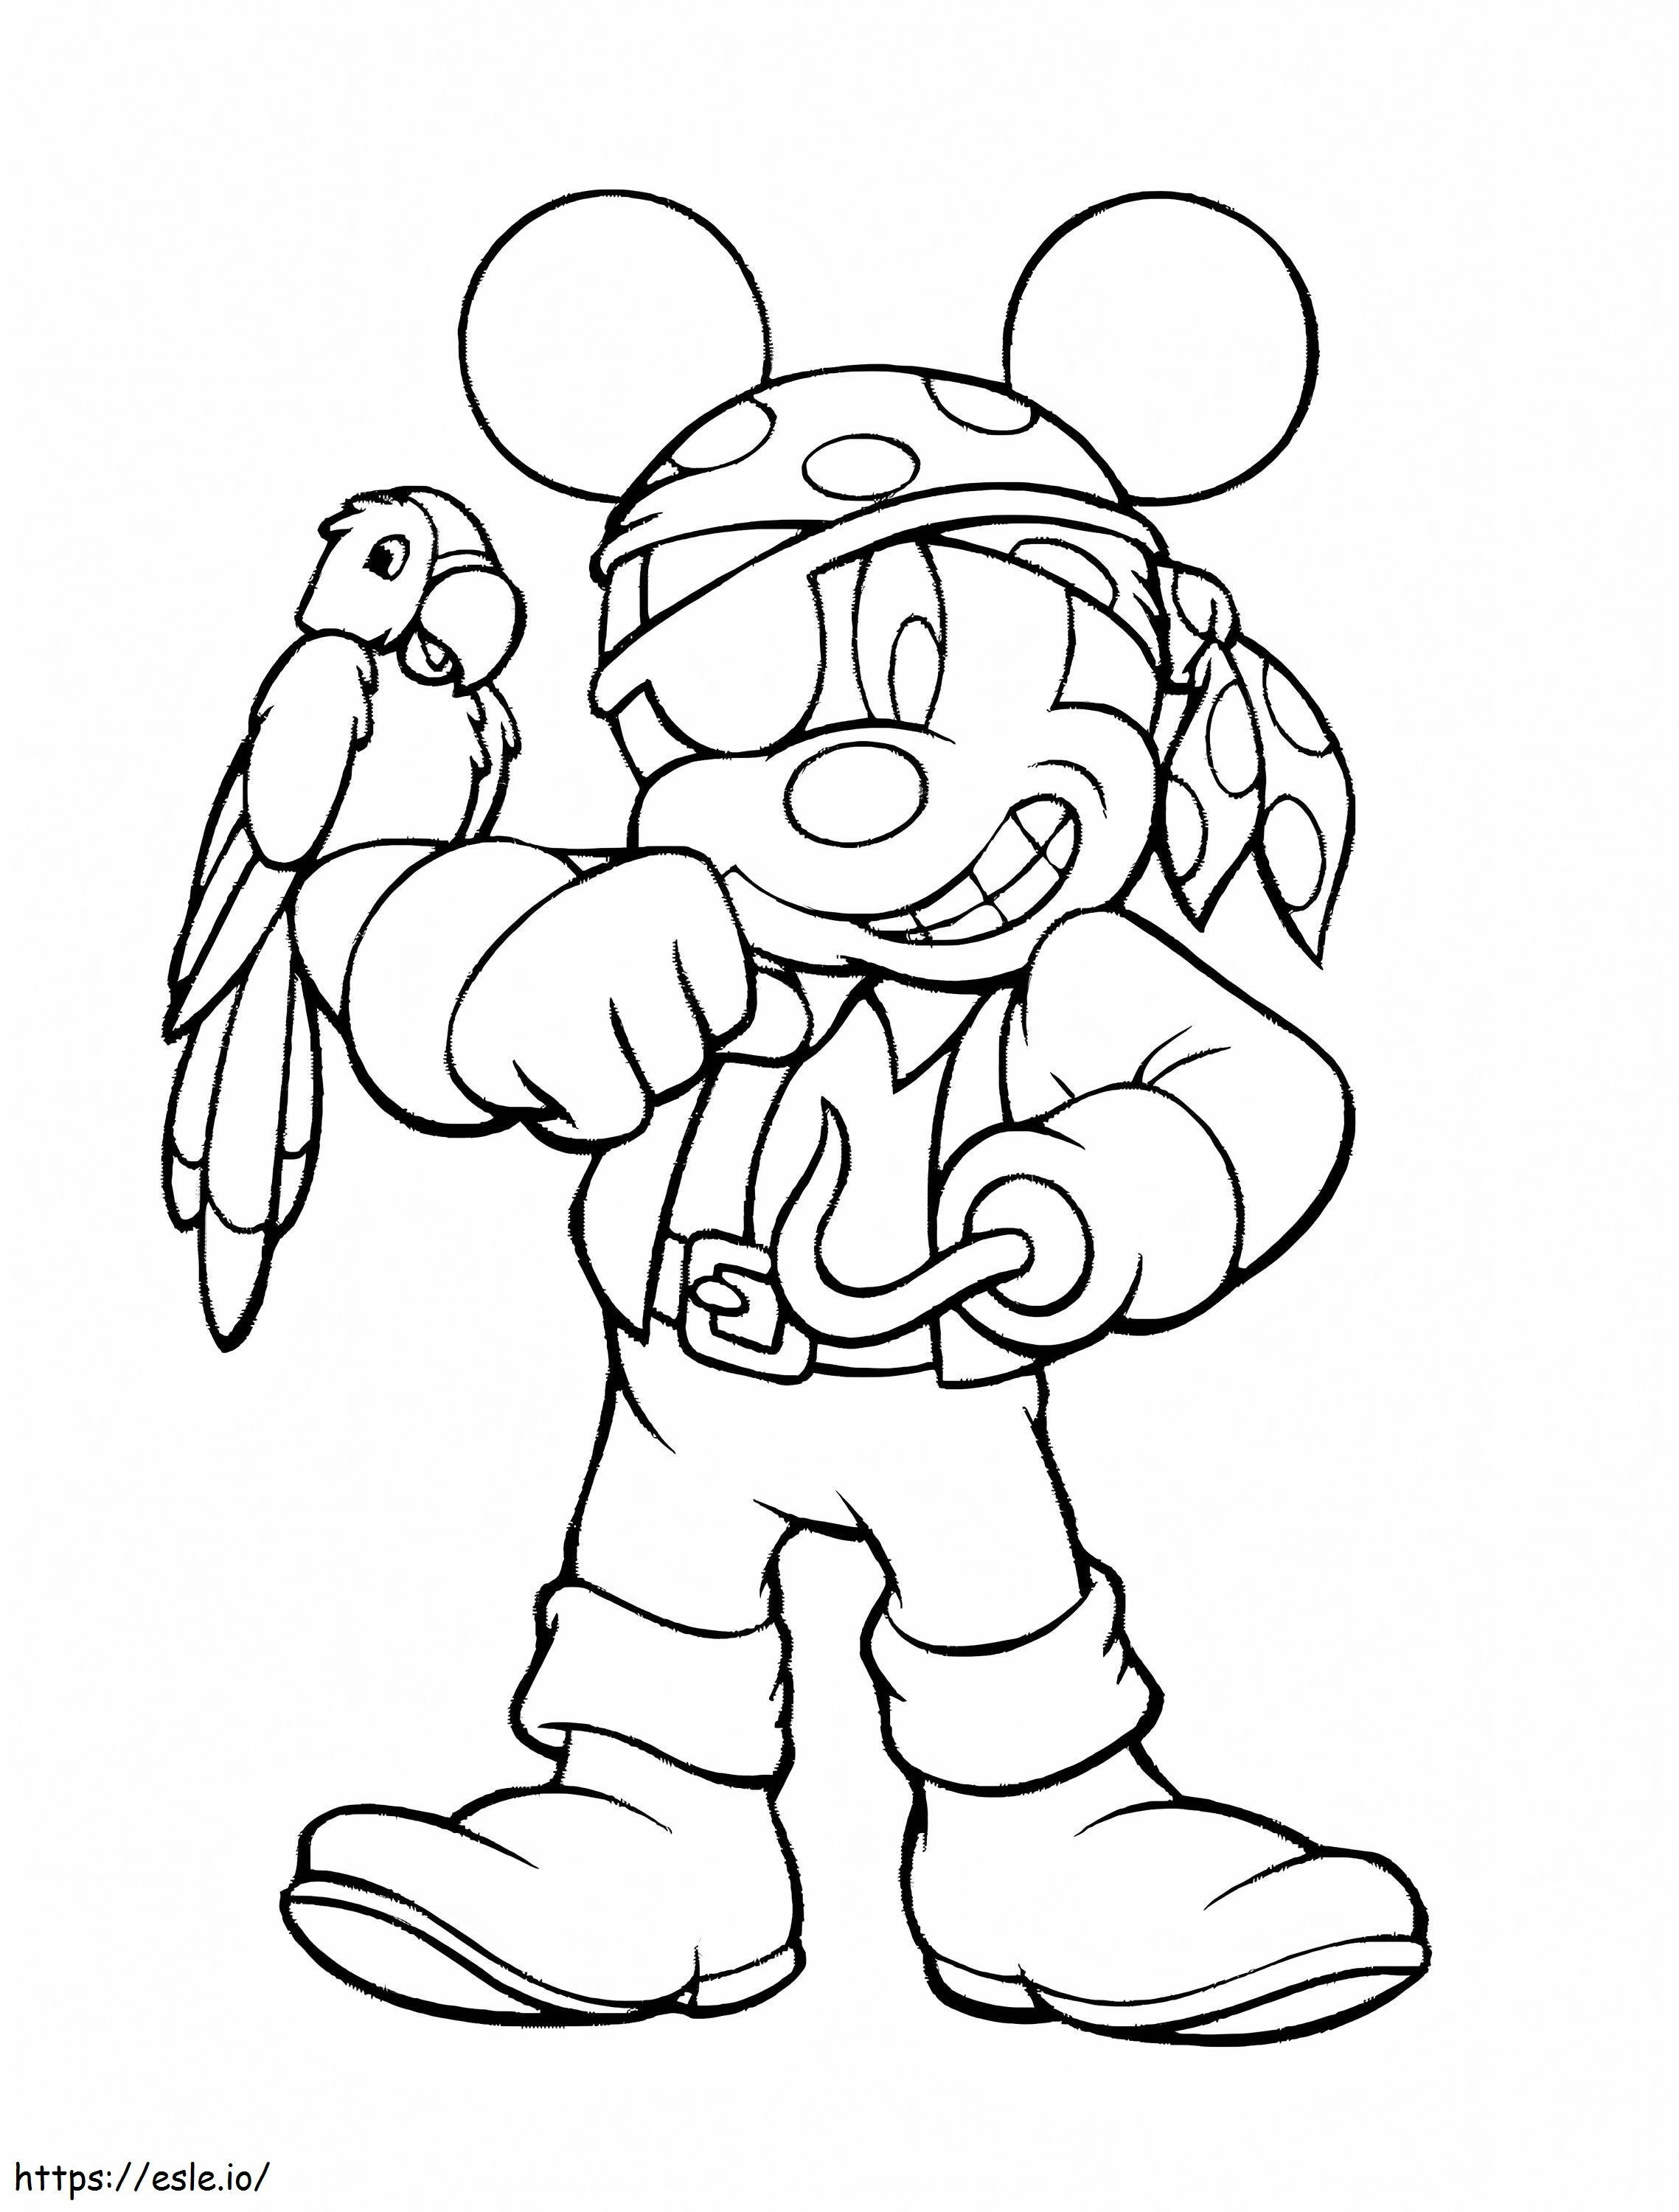 Mickey cu cârlig de colorat